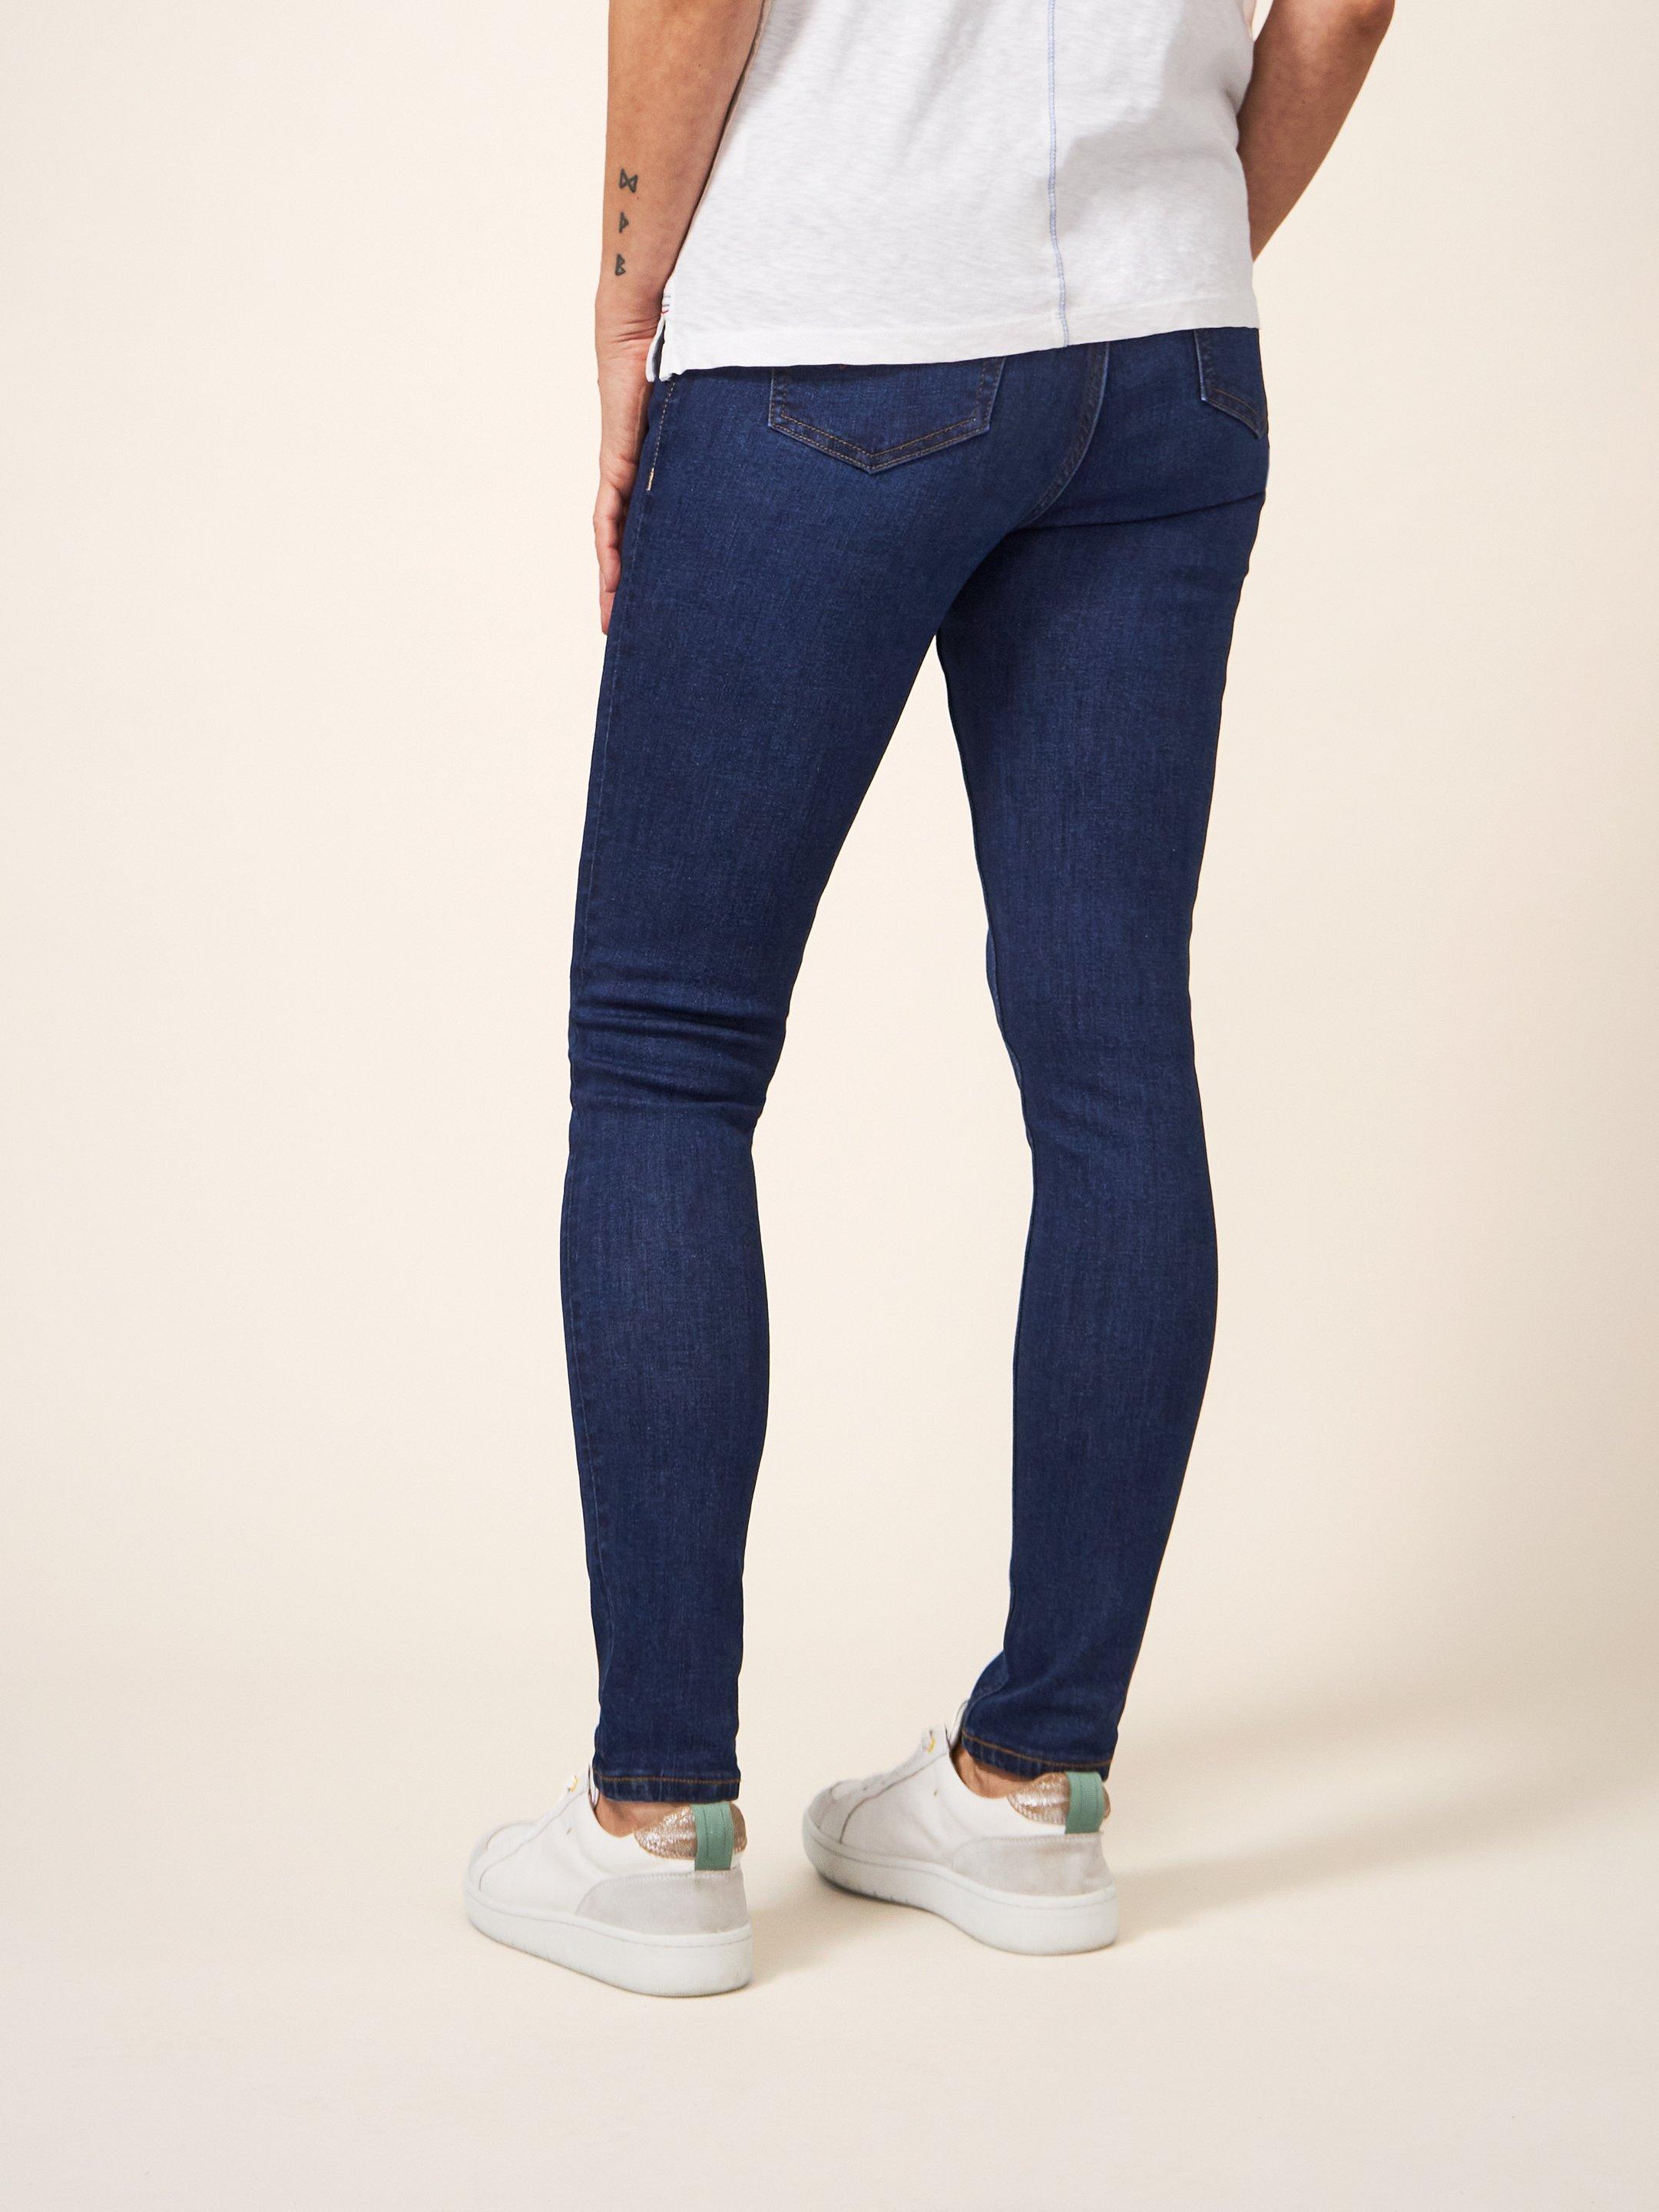 Amelia Skinny Jeans in MID DENIM - MODEL BACK